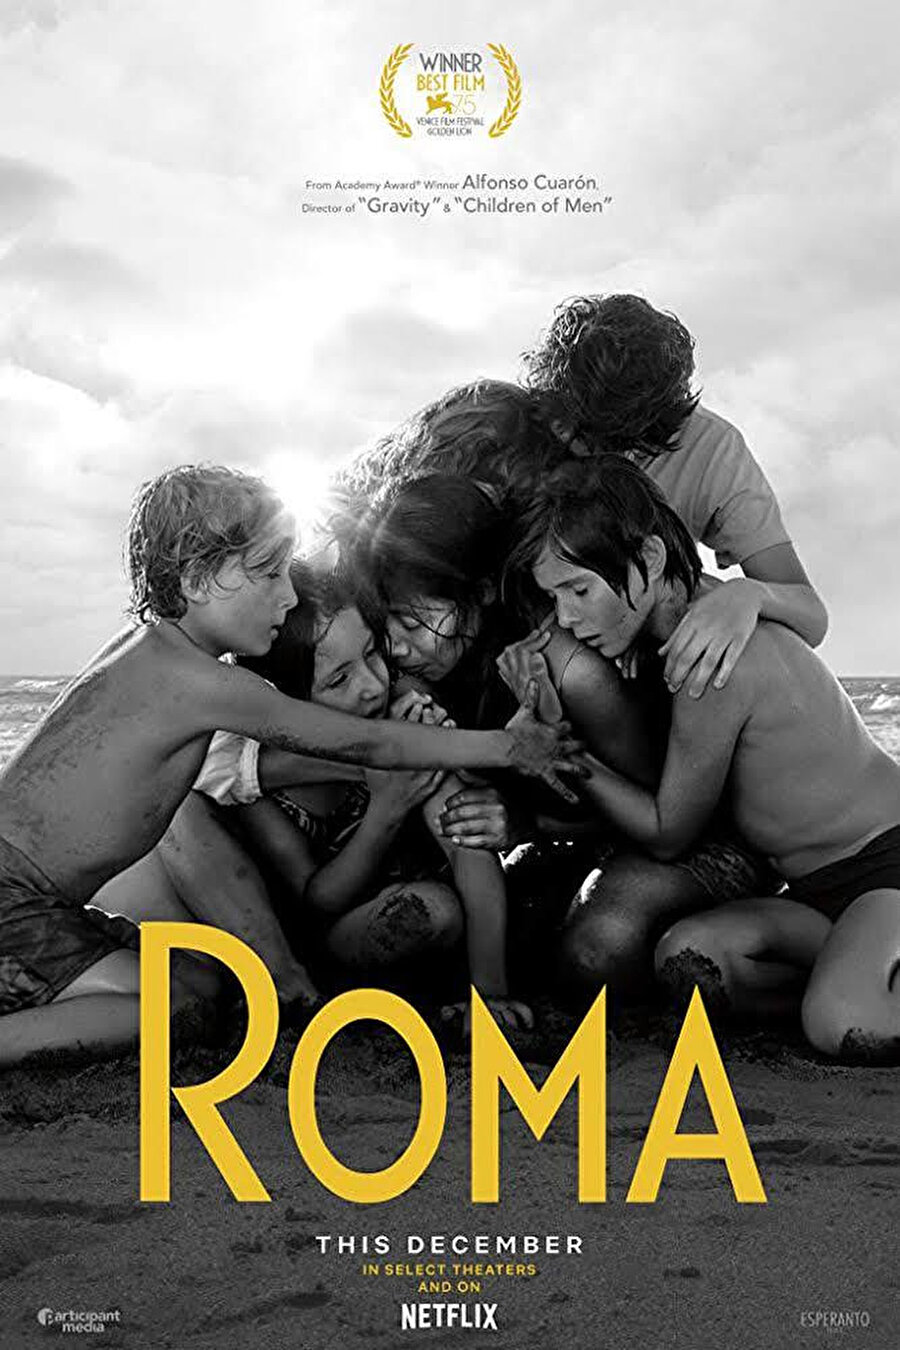 Roma Bu yılın çok konuşulan filmlerinden Alfonso Cuarón imzalı Roma, 70’lerin başında Meksiko’da yaşayan orta sınıf bir ailenin hayatından bir yılın hikâyesini anlatıyor. Venedik Film Festivali’nden Altın Aslan ödülü ile dönen Netflix yapımı film, online platform ile birlikte sinema salonlarında da gösterime girecek. Vizyon tarihi: 14 Aralık 2018